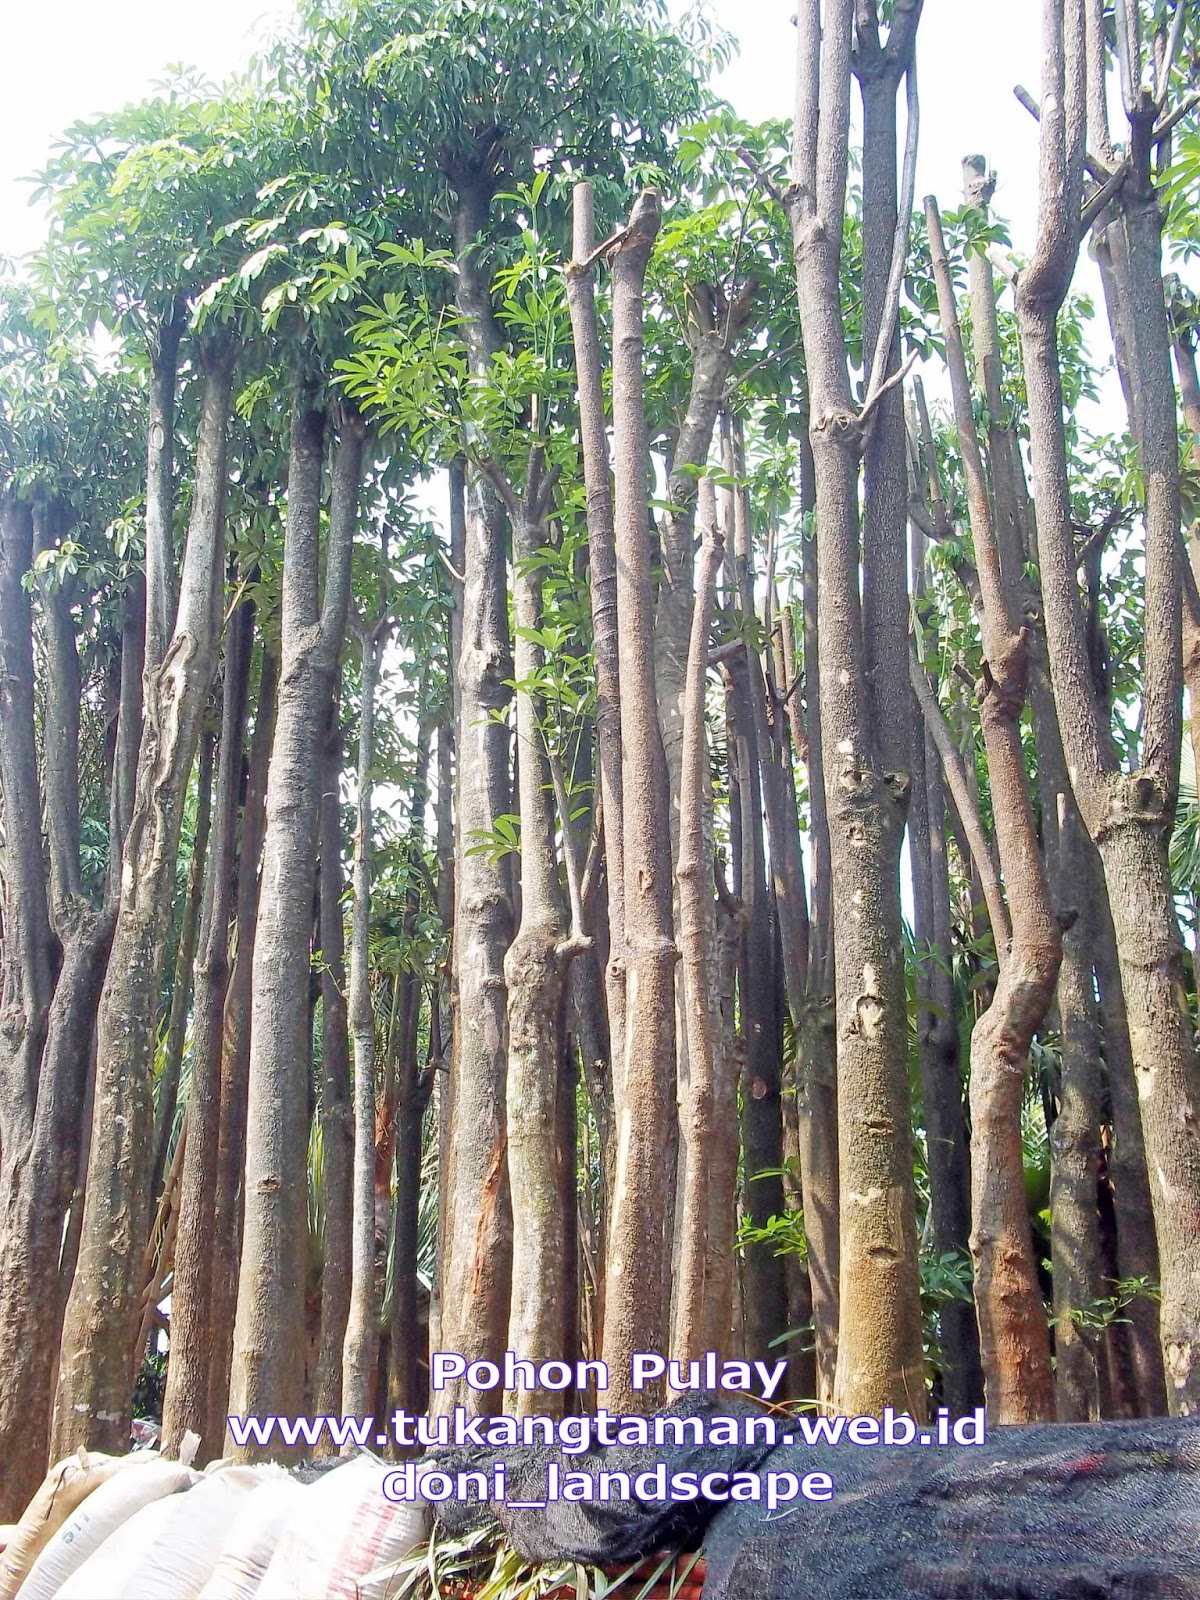 Jual Pohon Pule Supplier Pohon Pulay Murah Tanaman  